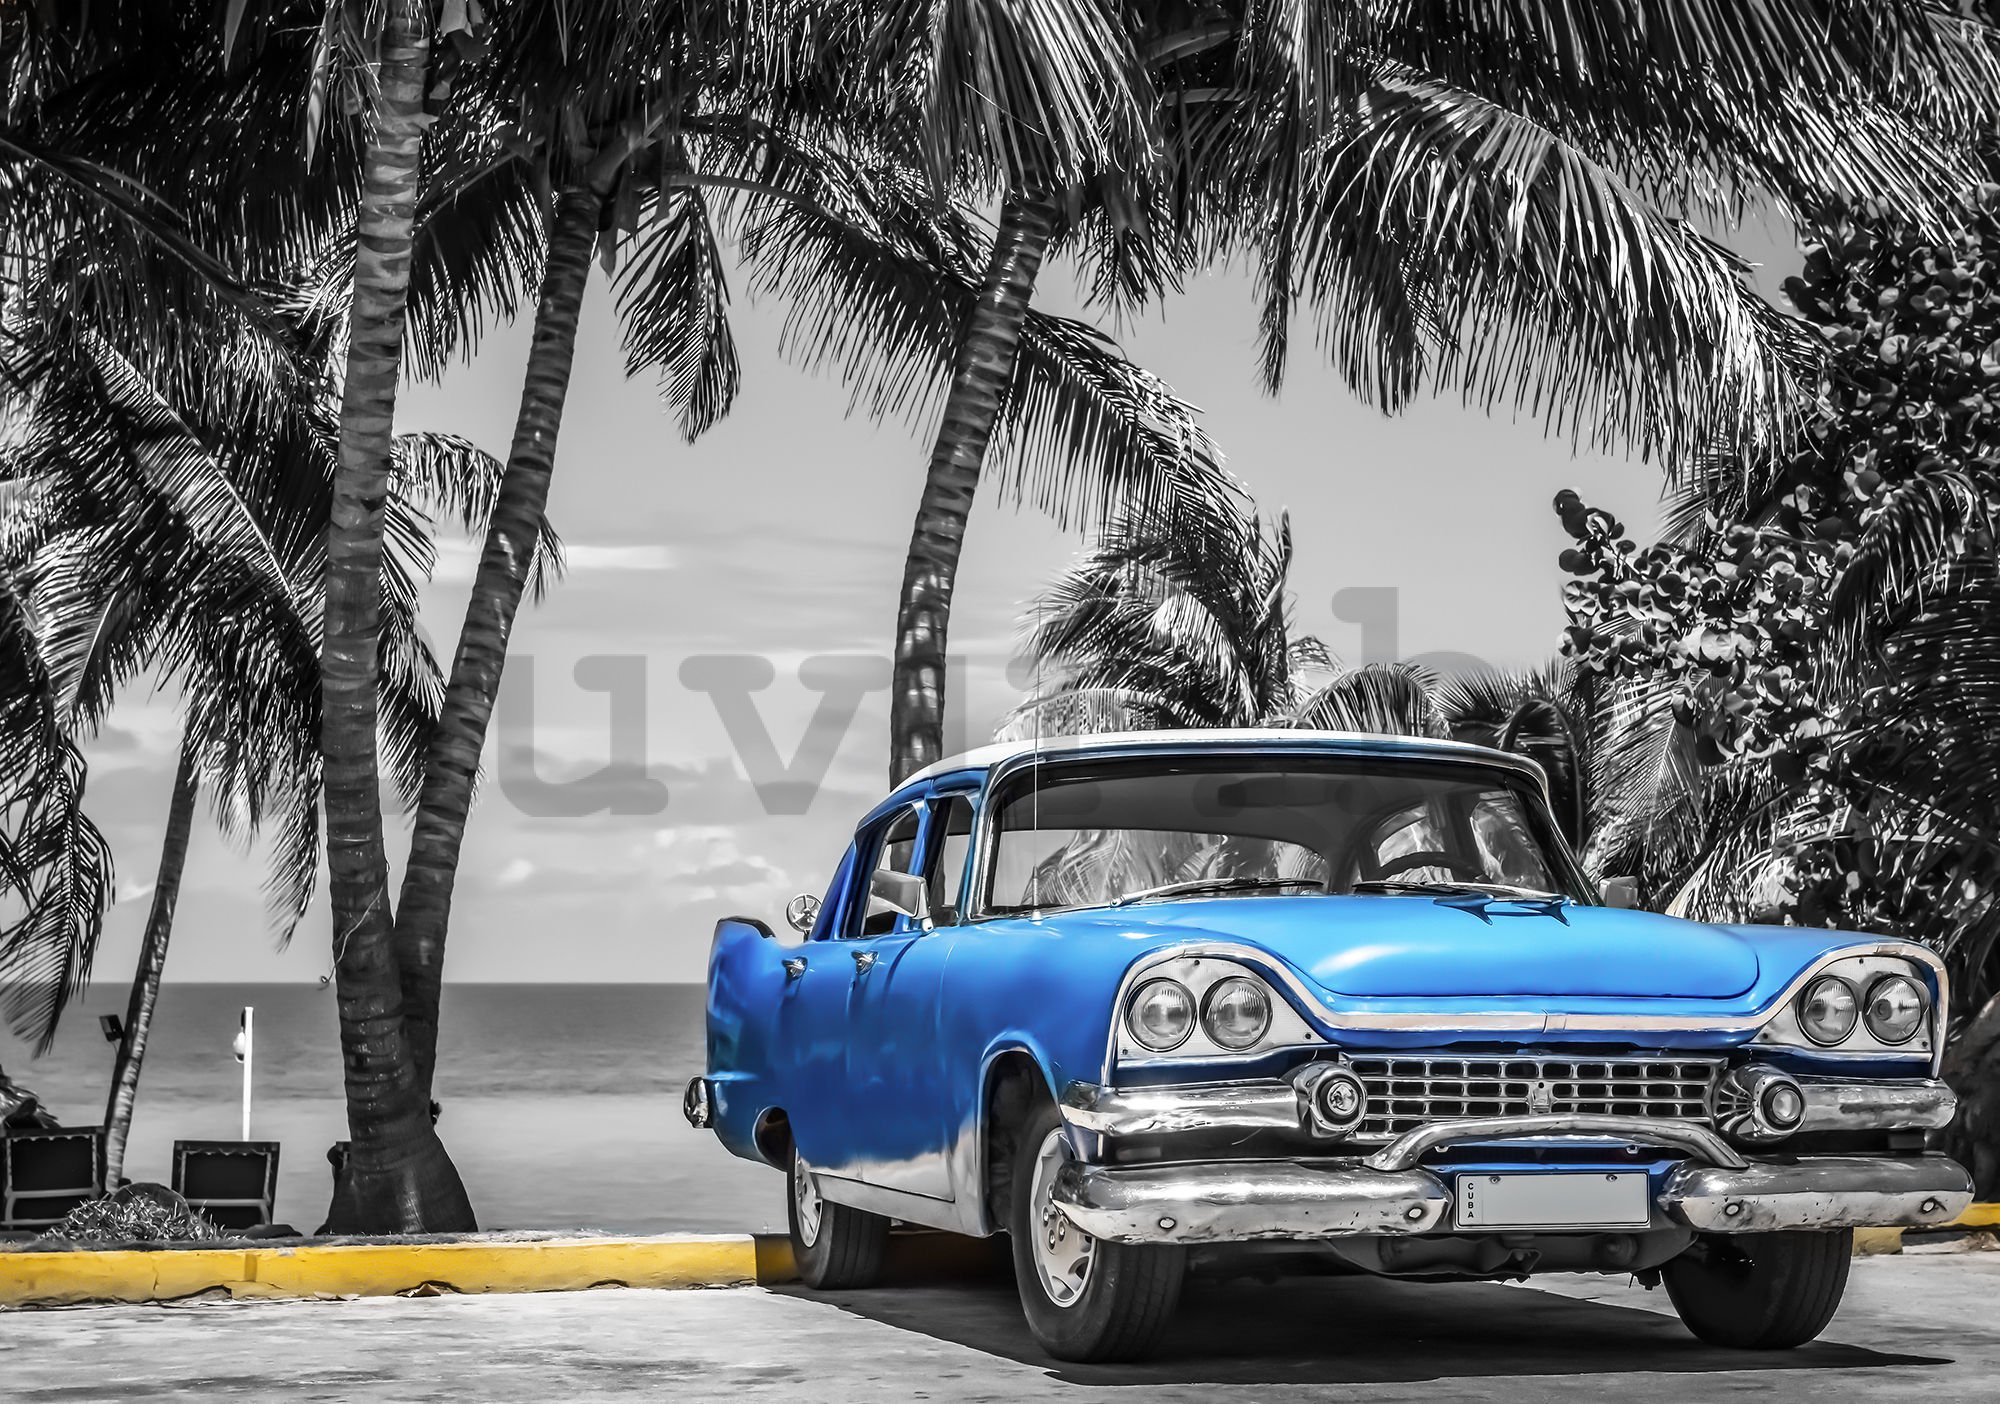 Vlies fotótapéta: Kuba kék autó a tenger mellett - 254x368 cm